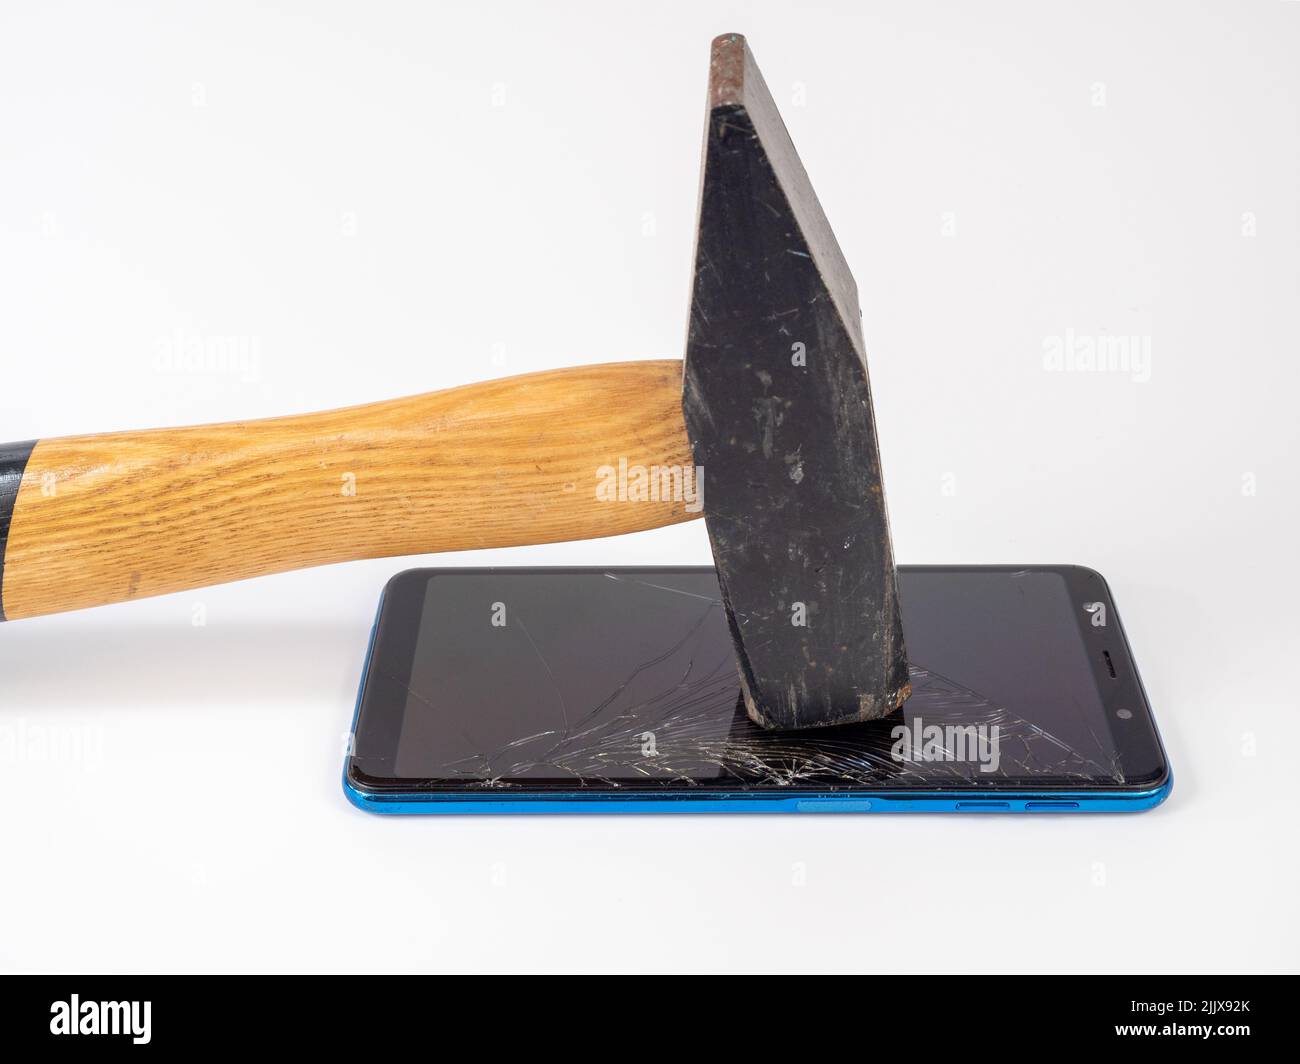 Un marteau doté d'une poignée en bois casse un smartphone. Banque D'Images